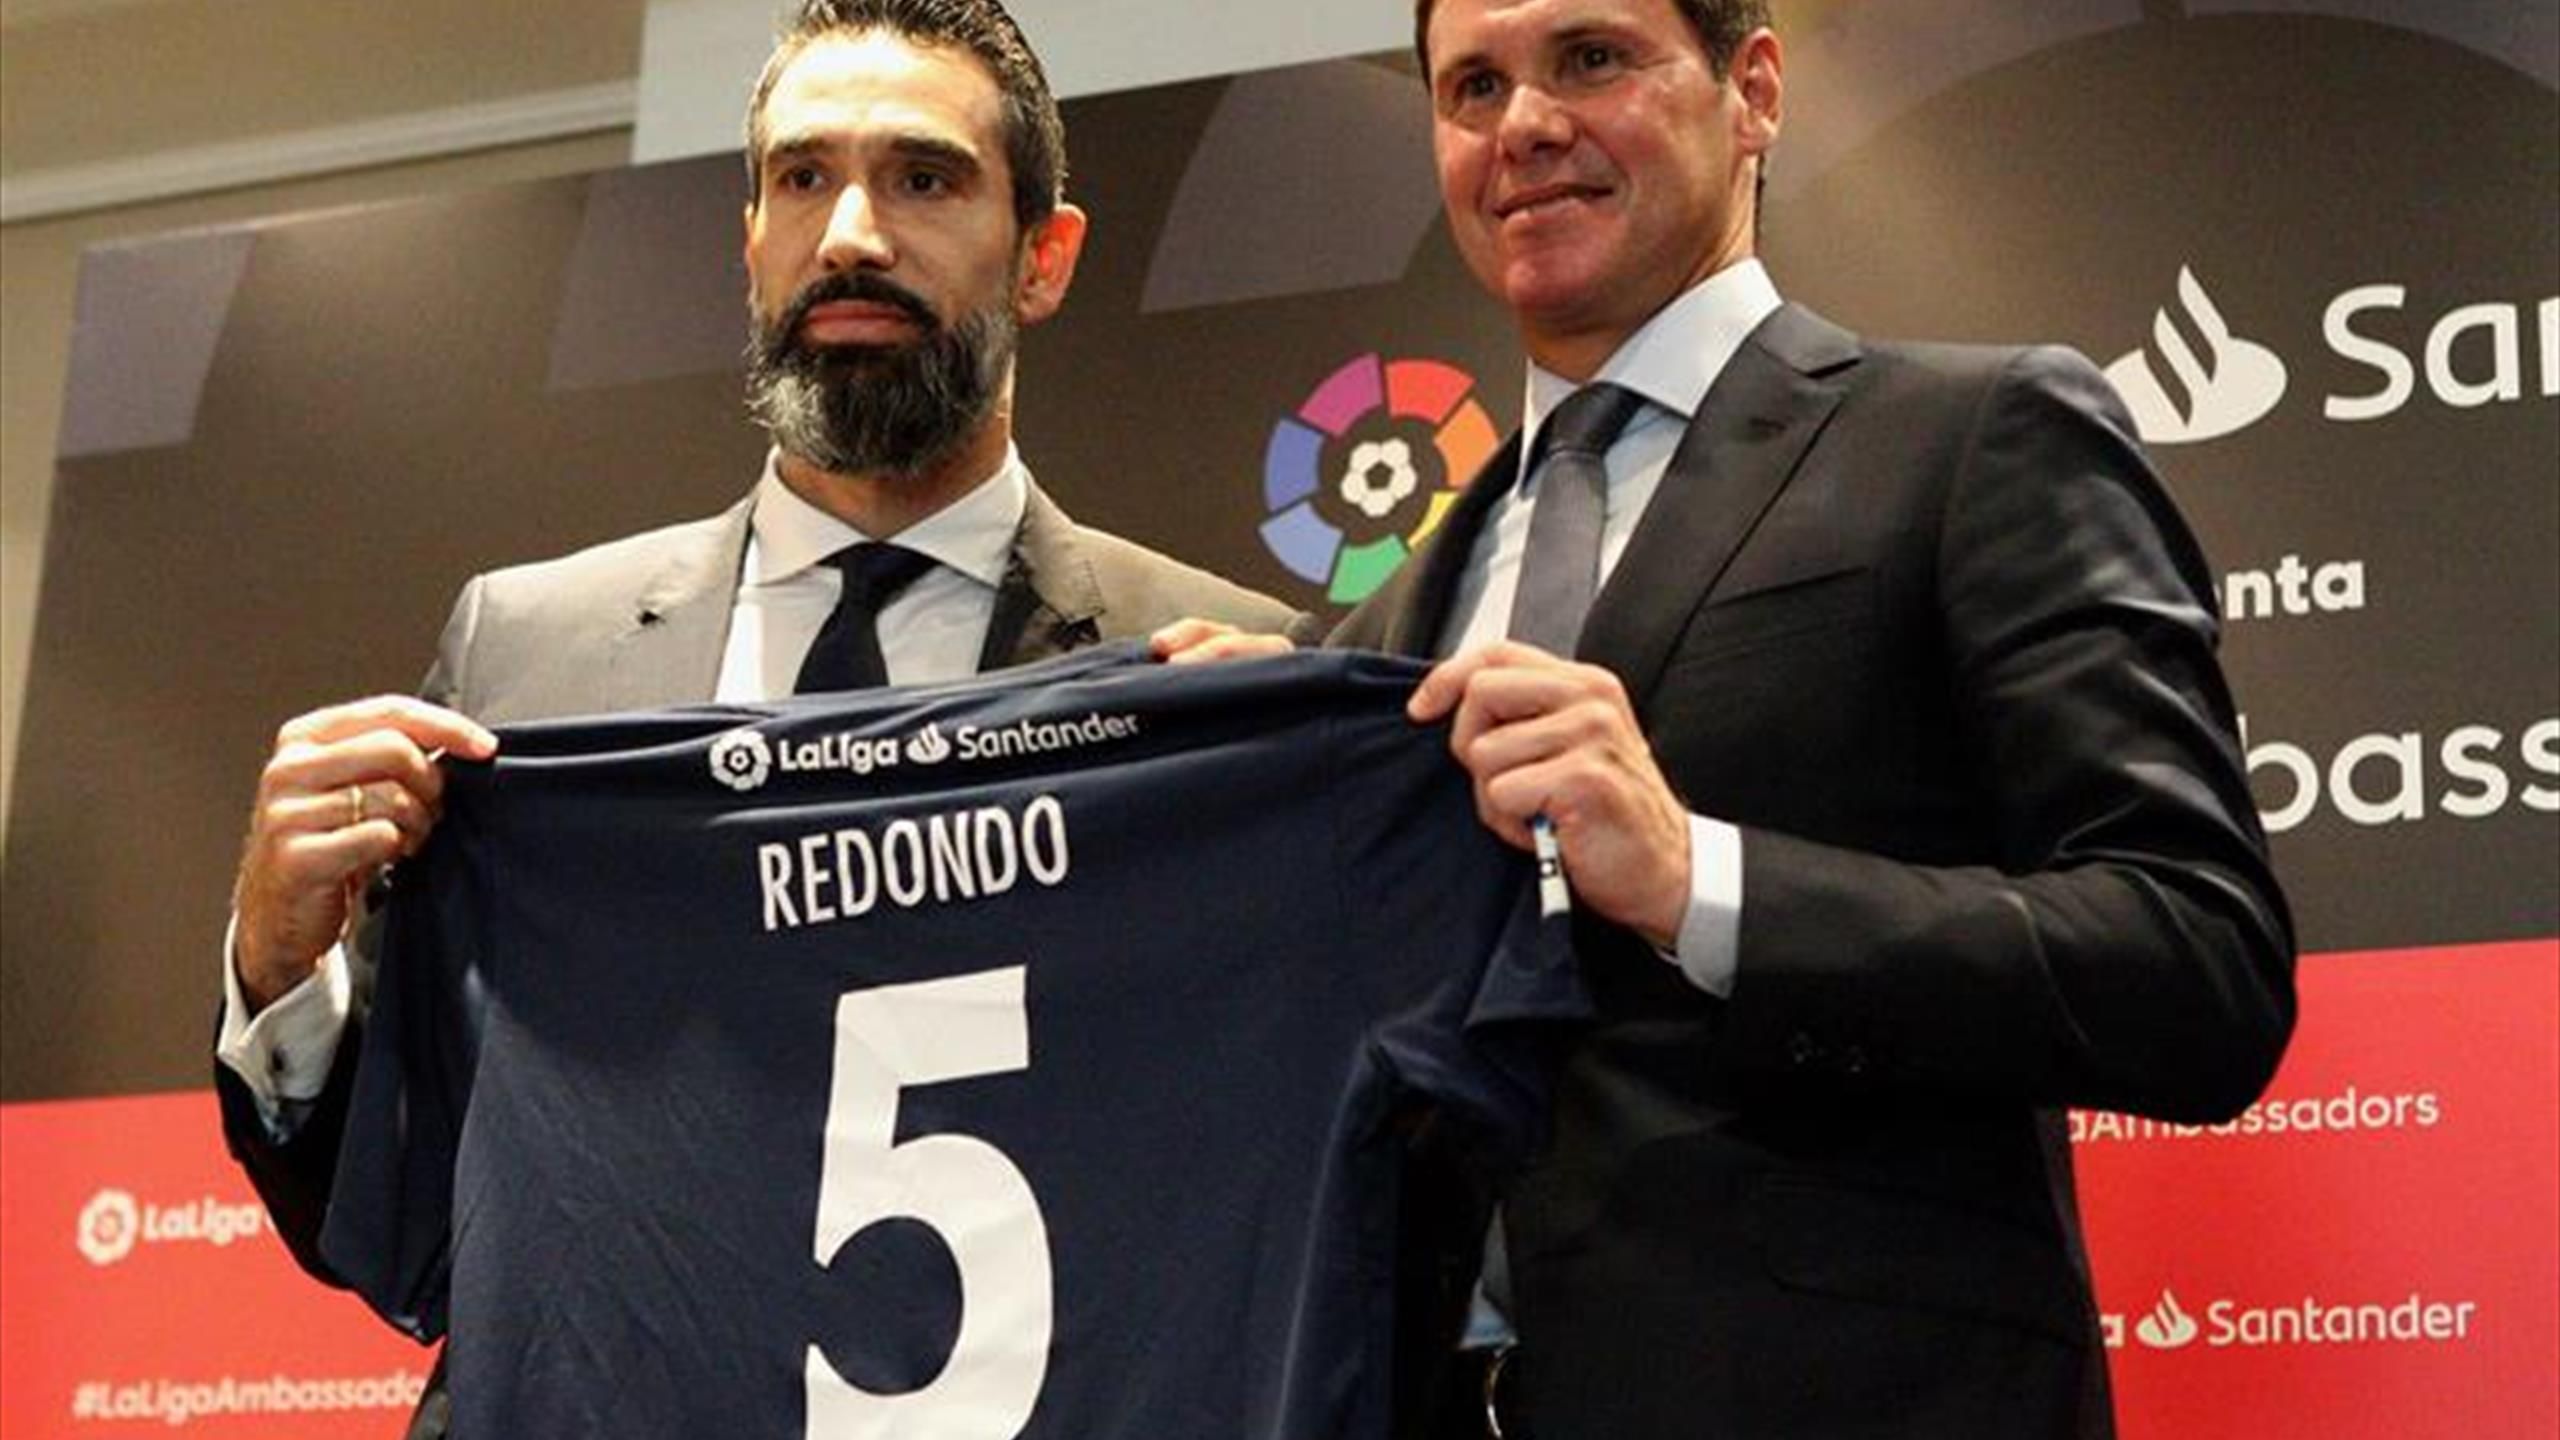 Fernando Redondo se convierte el embajador de LaLiga en Argentina - Eurosport